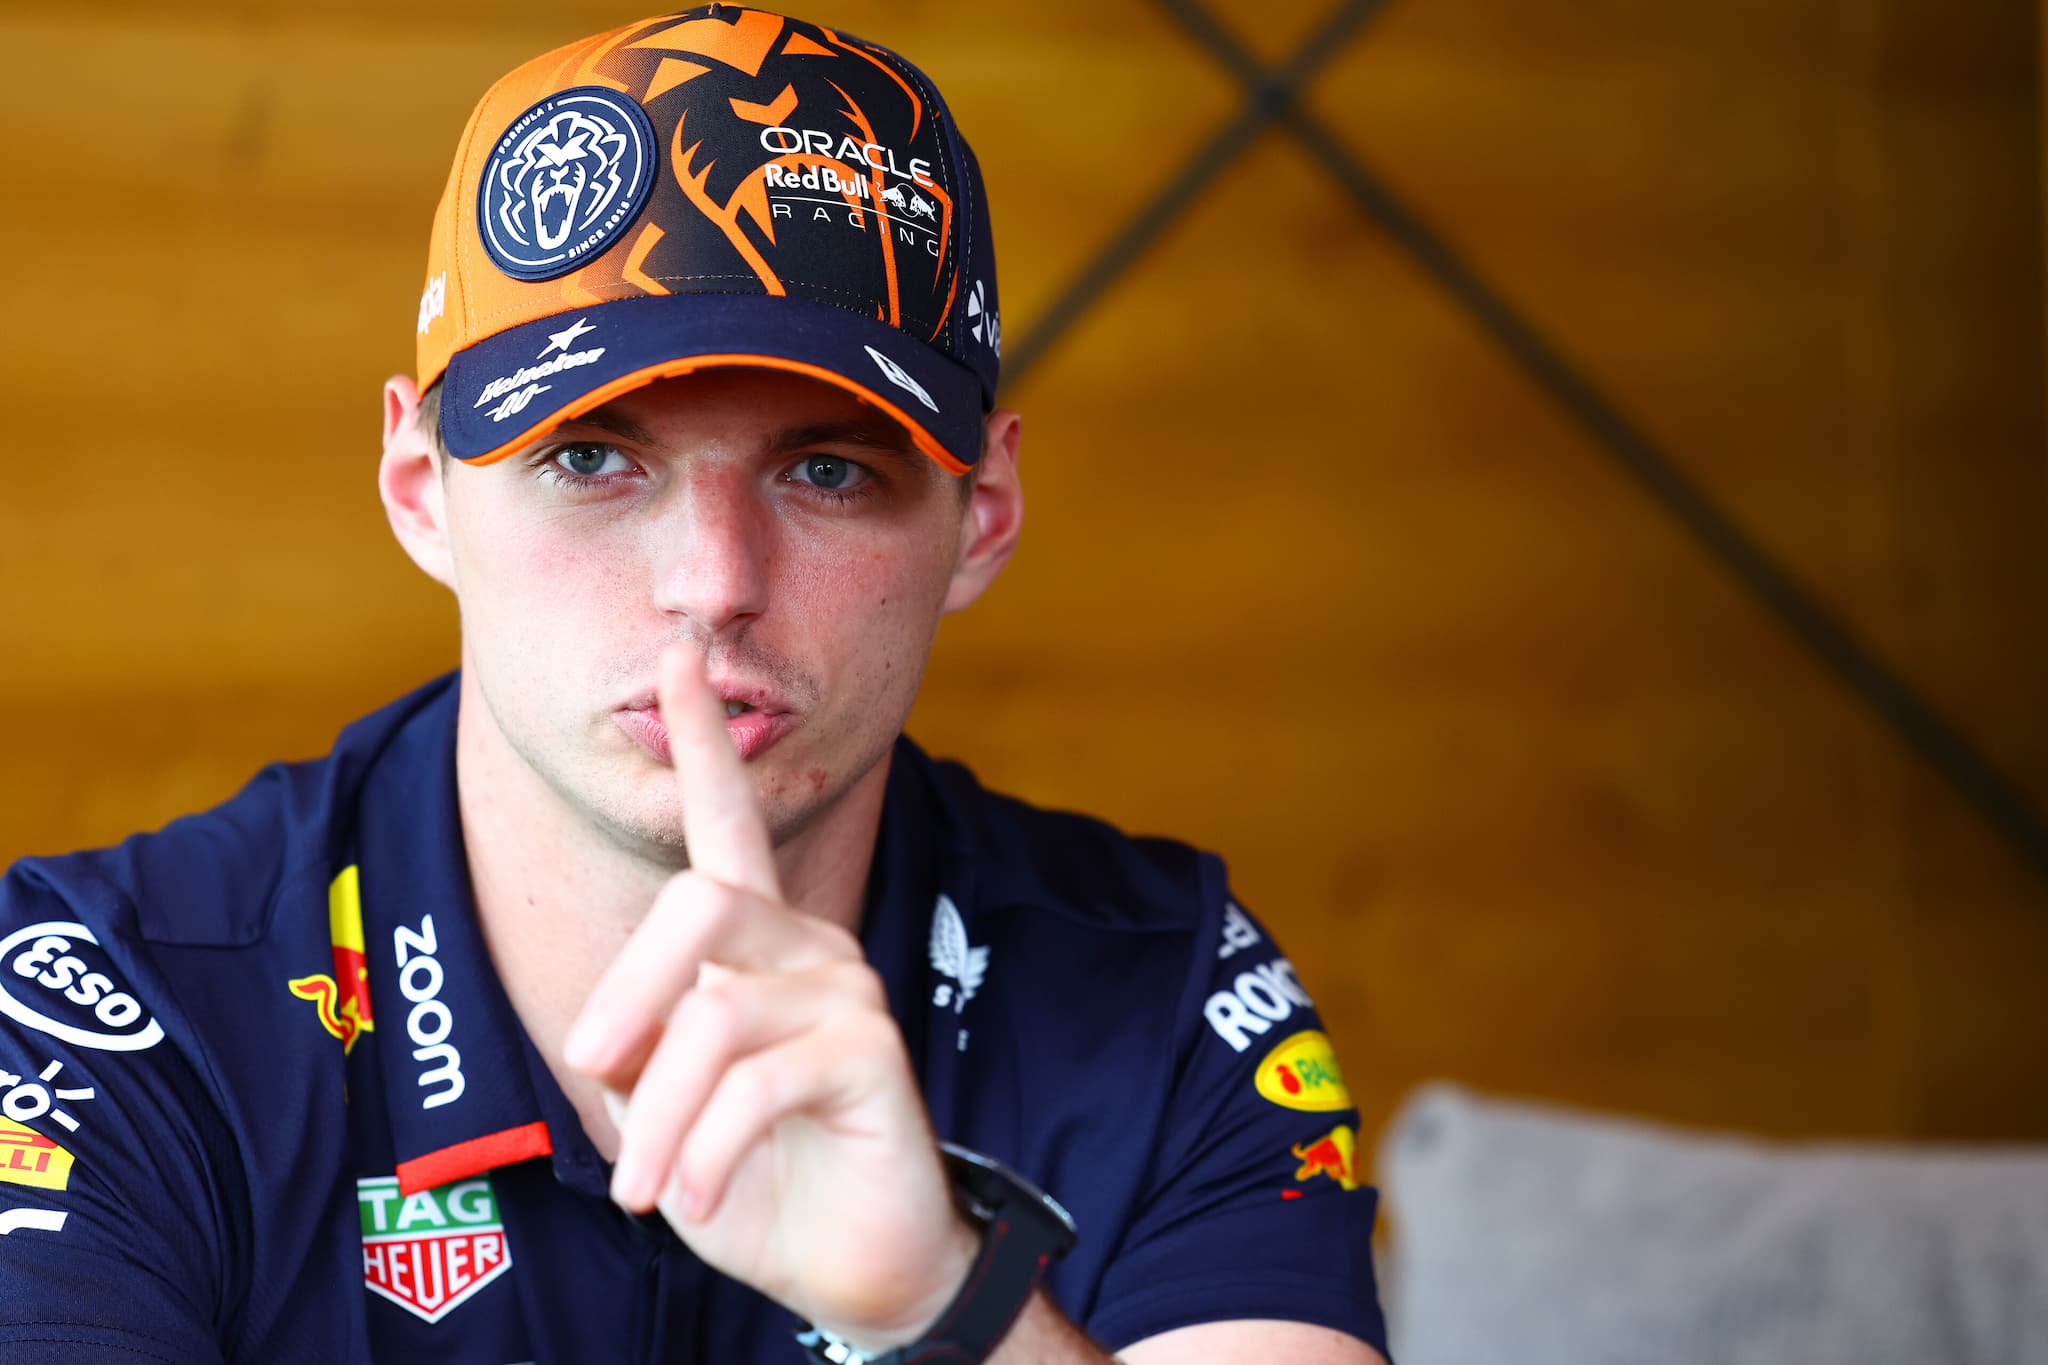 Verstappen z wielką przewagą na starcie weekendu F1 w Belgii, Ocon stracił trening